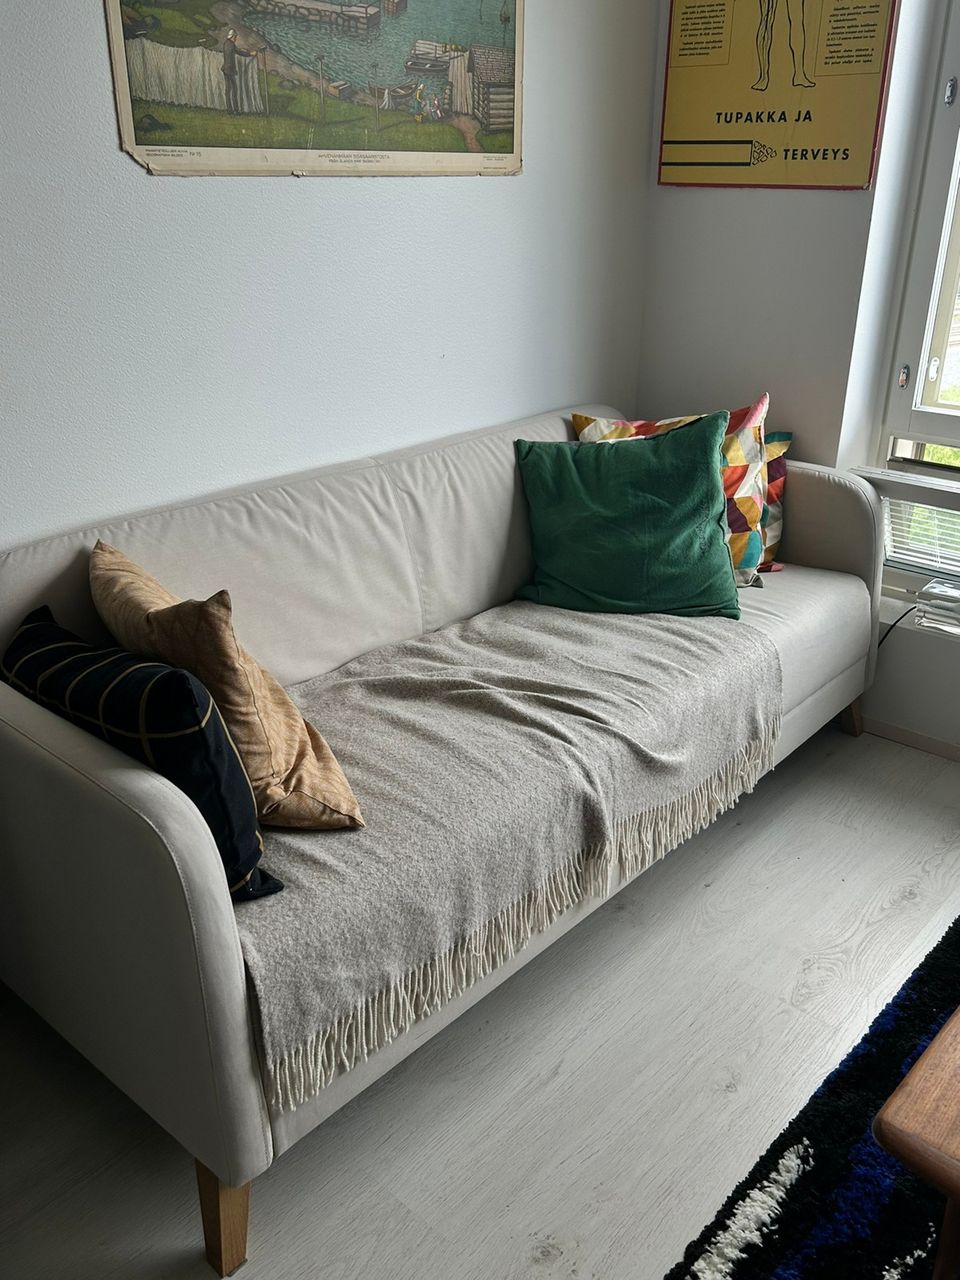 Ikea Linanäs sohva